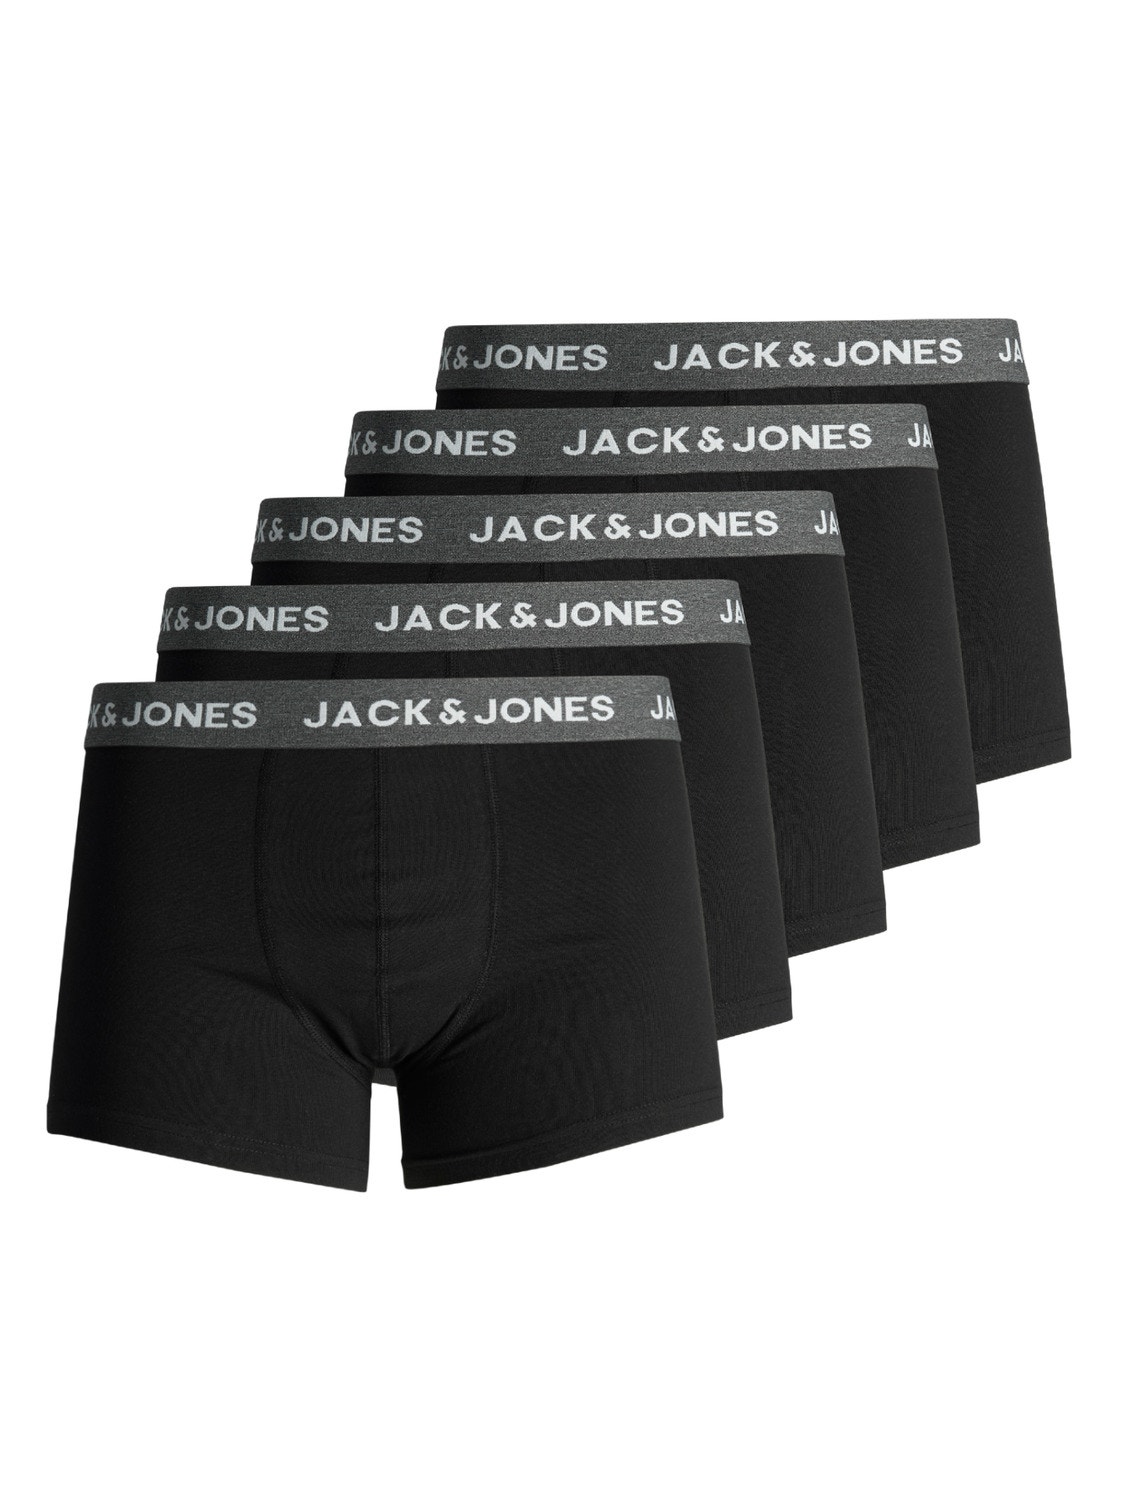 Zuidwest Plons onderwijzen 5-pack Boxershorts | Zwart | Jack & Jones®